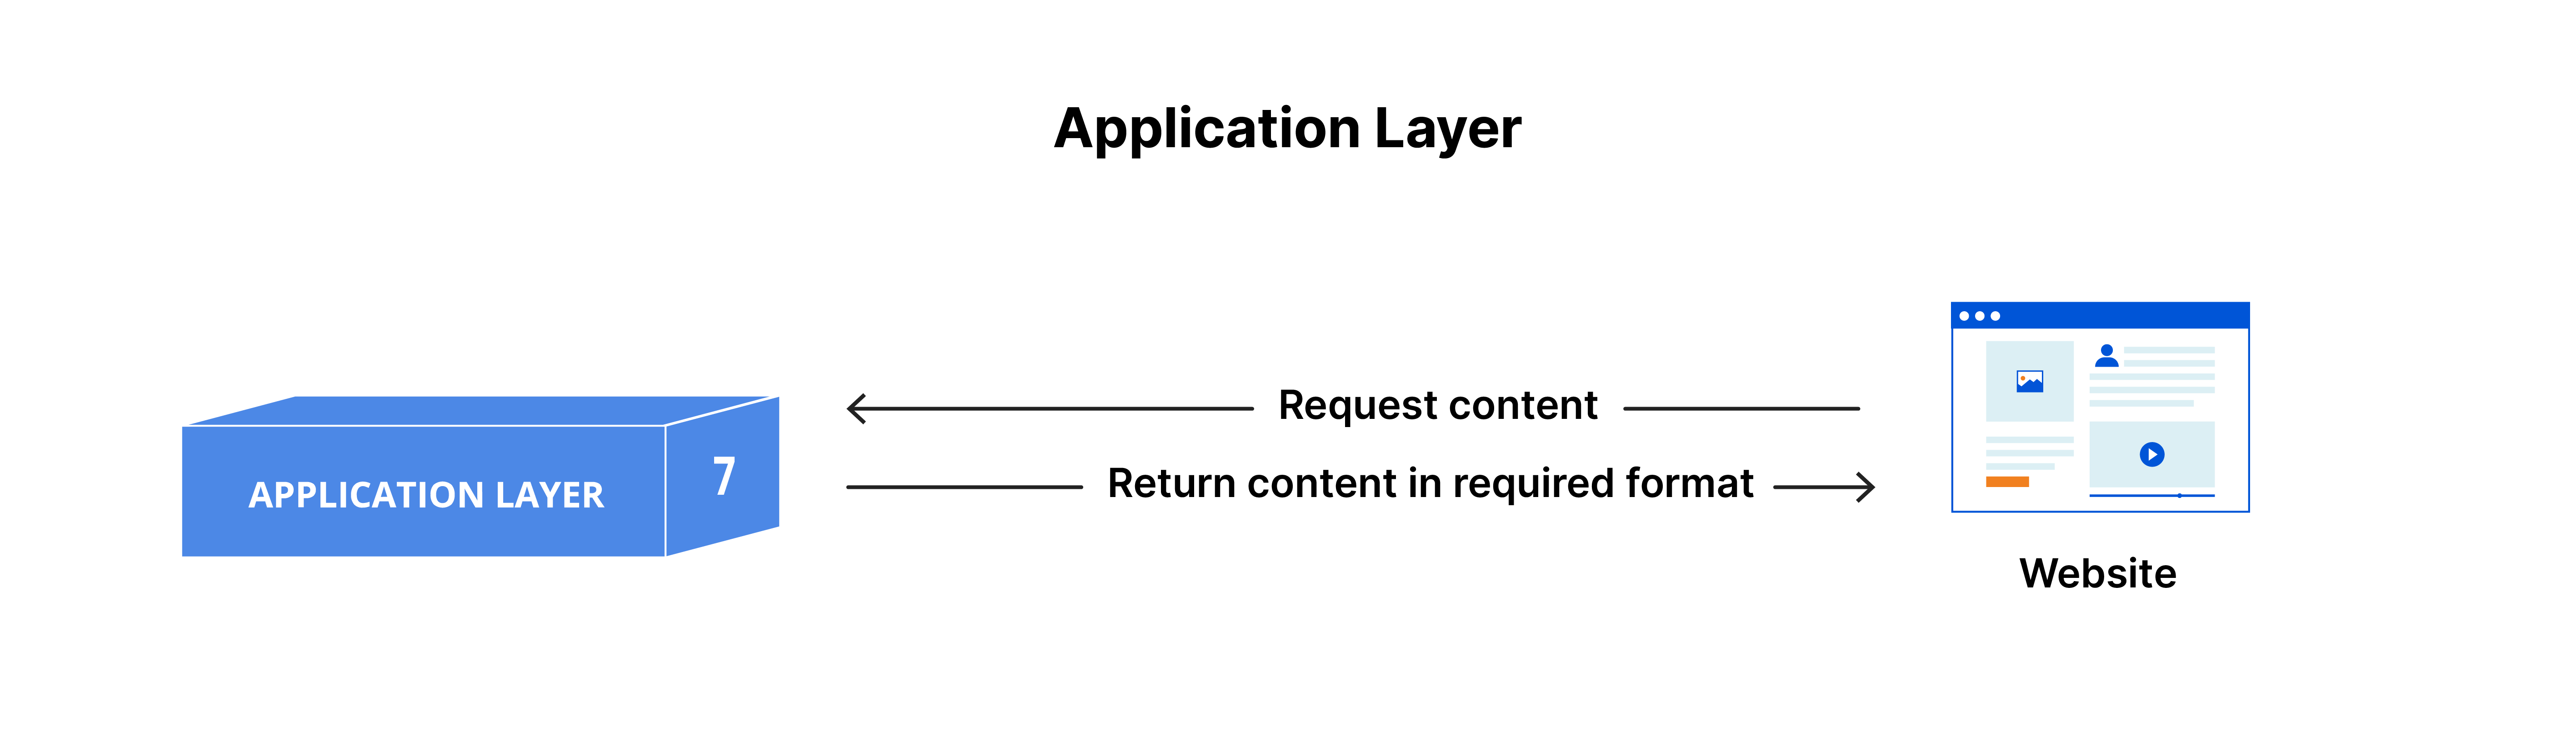 La capa de aplicación: contenido solicitado y devuelto en el formato requerido